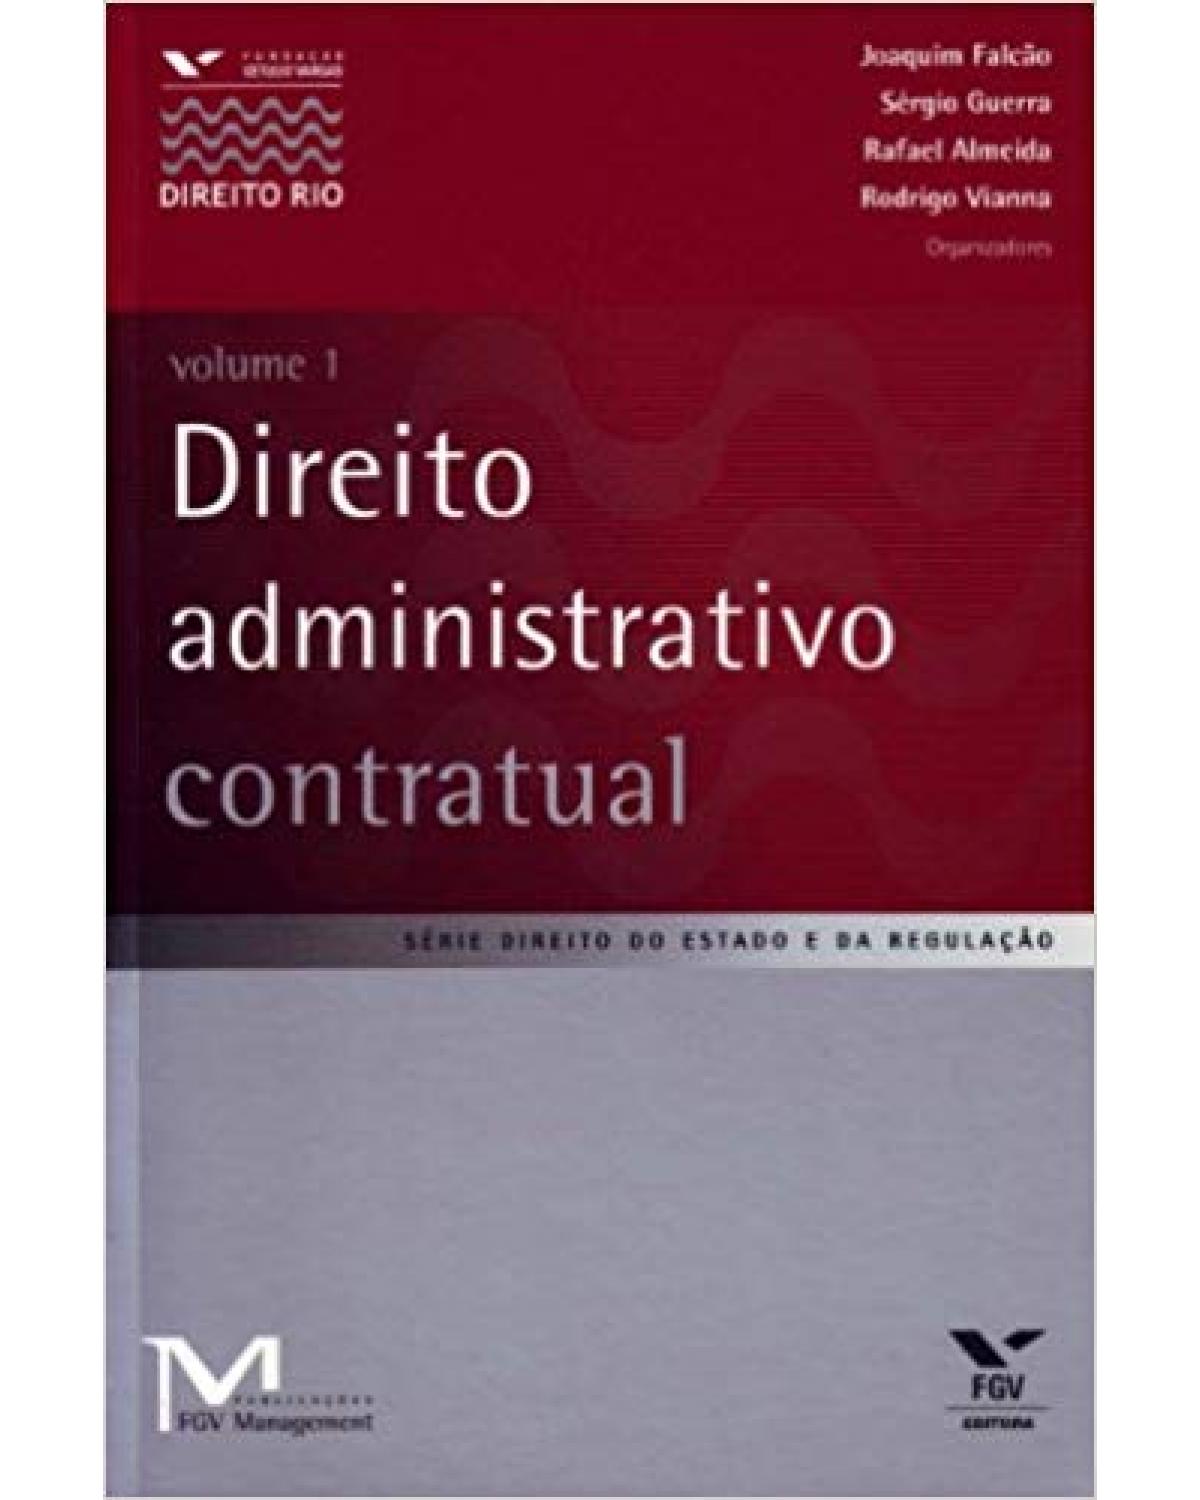 Direito administrativo contratual - Volume 1 - 1ª Edição